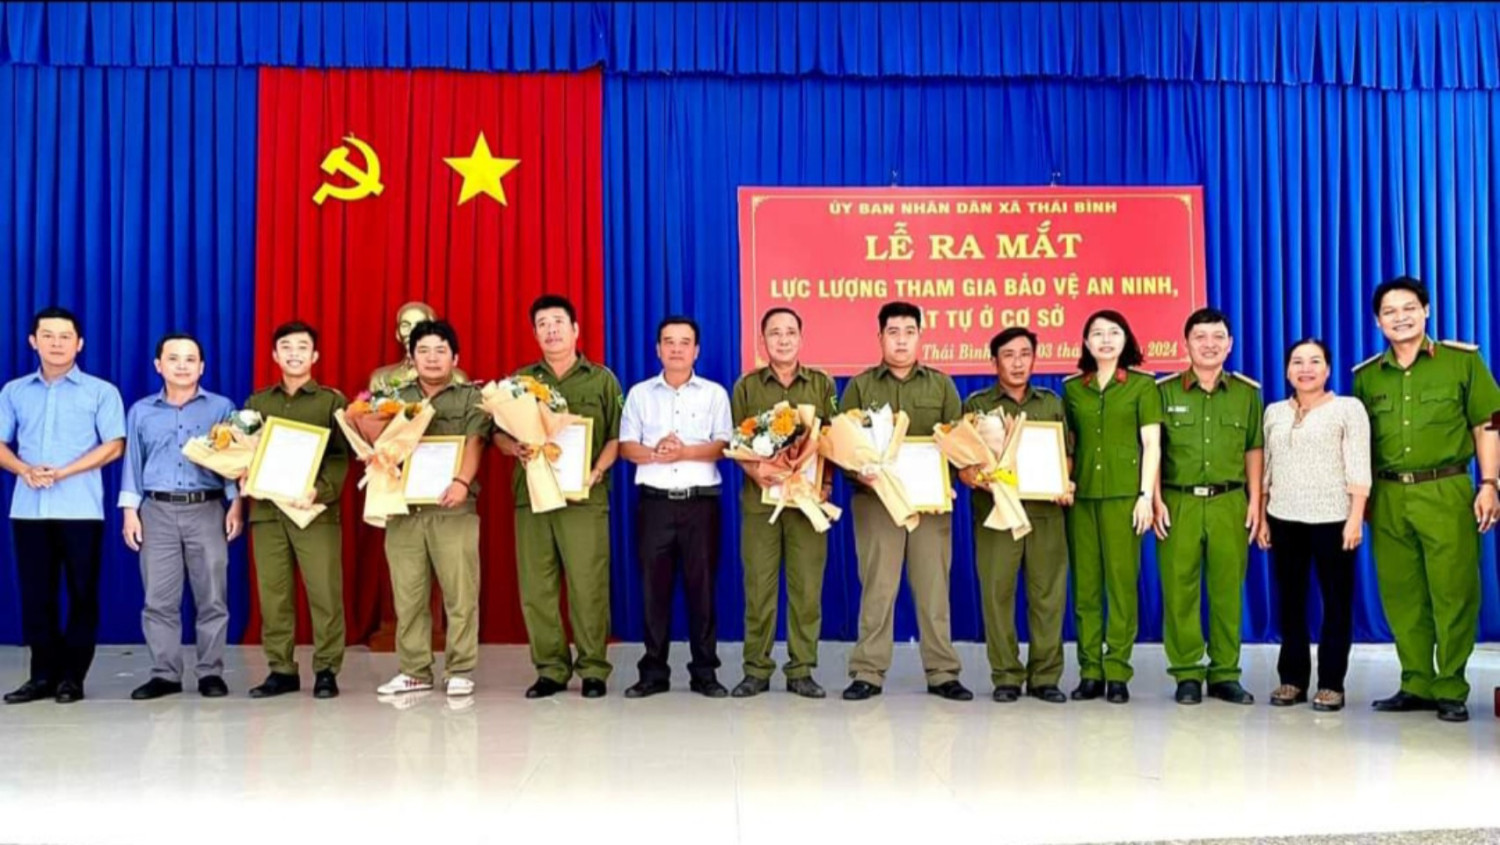 Thái Bình: Ra mắt lực lượng tham gia bảo vệ an ninh trật tự ở cơ sở